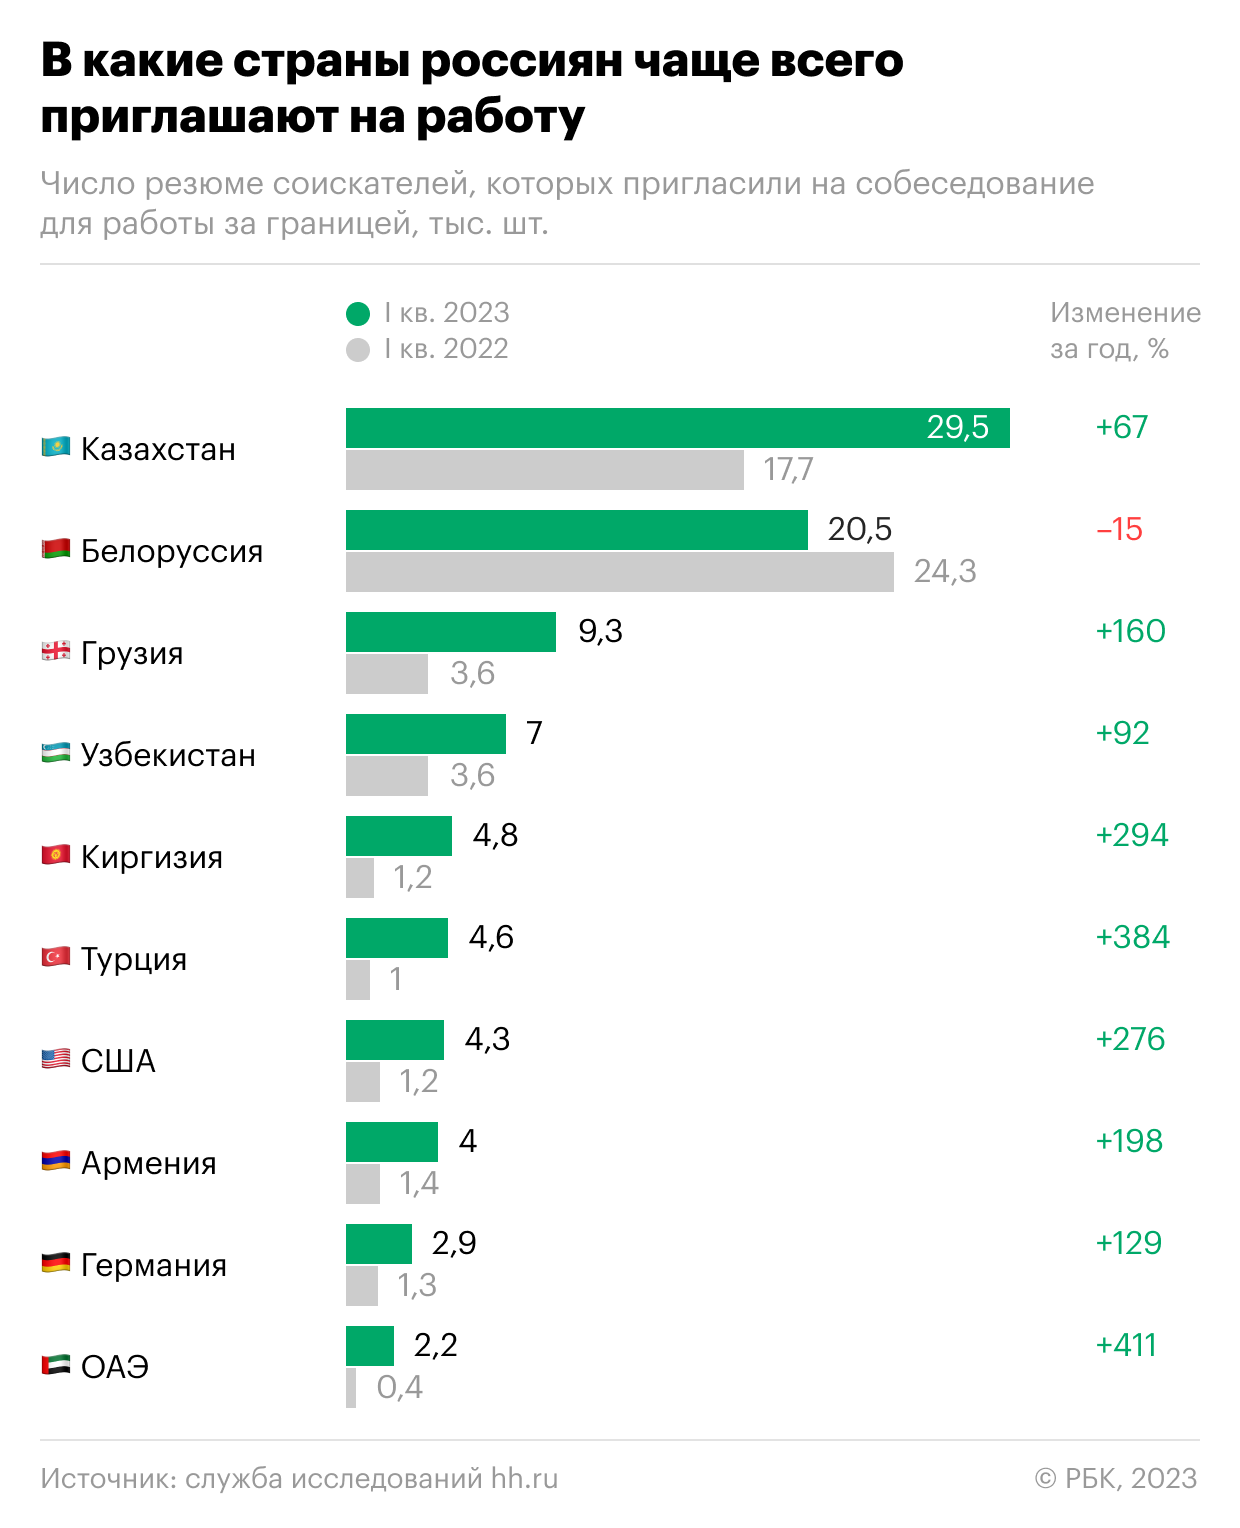 Сколько россиян в казахстане. Самые популярные страны. Самые работающие страны. Крупные компании России. Статистика.